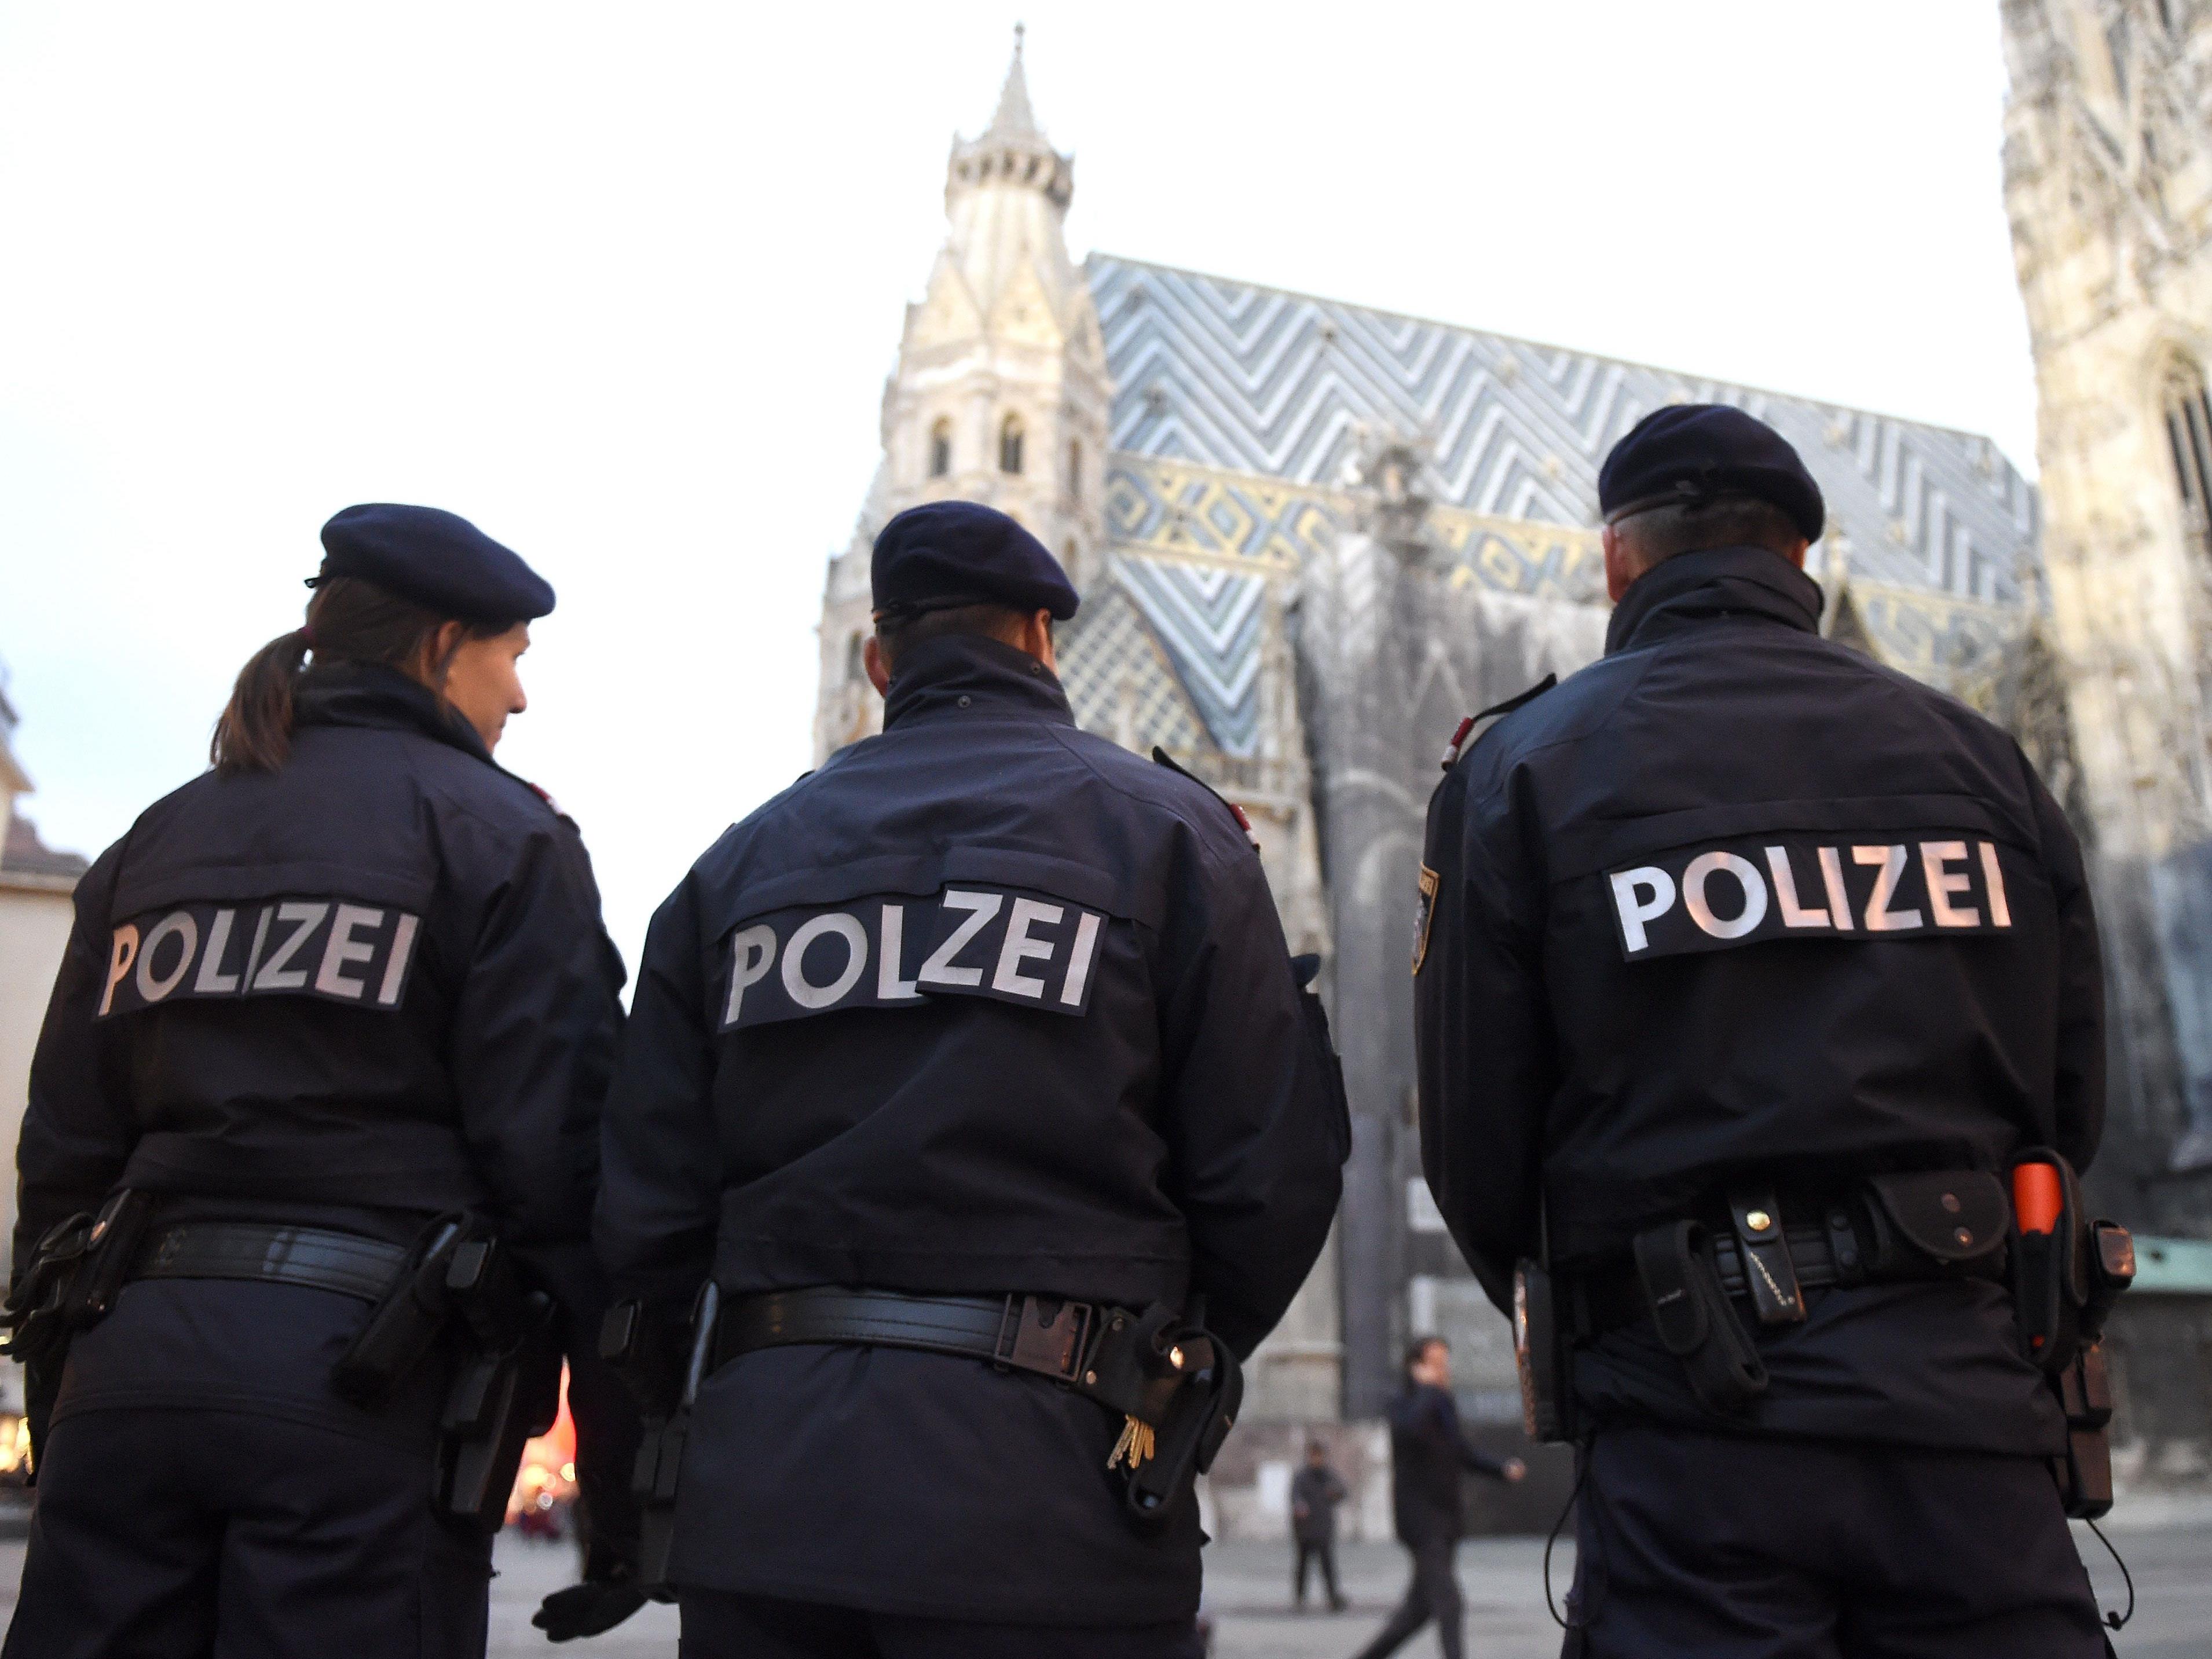 Wiener Polizisten sprachen Klartext über ihren Beruf